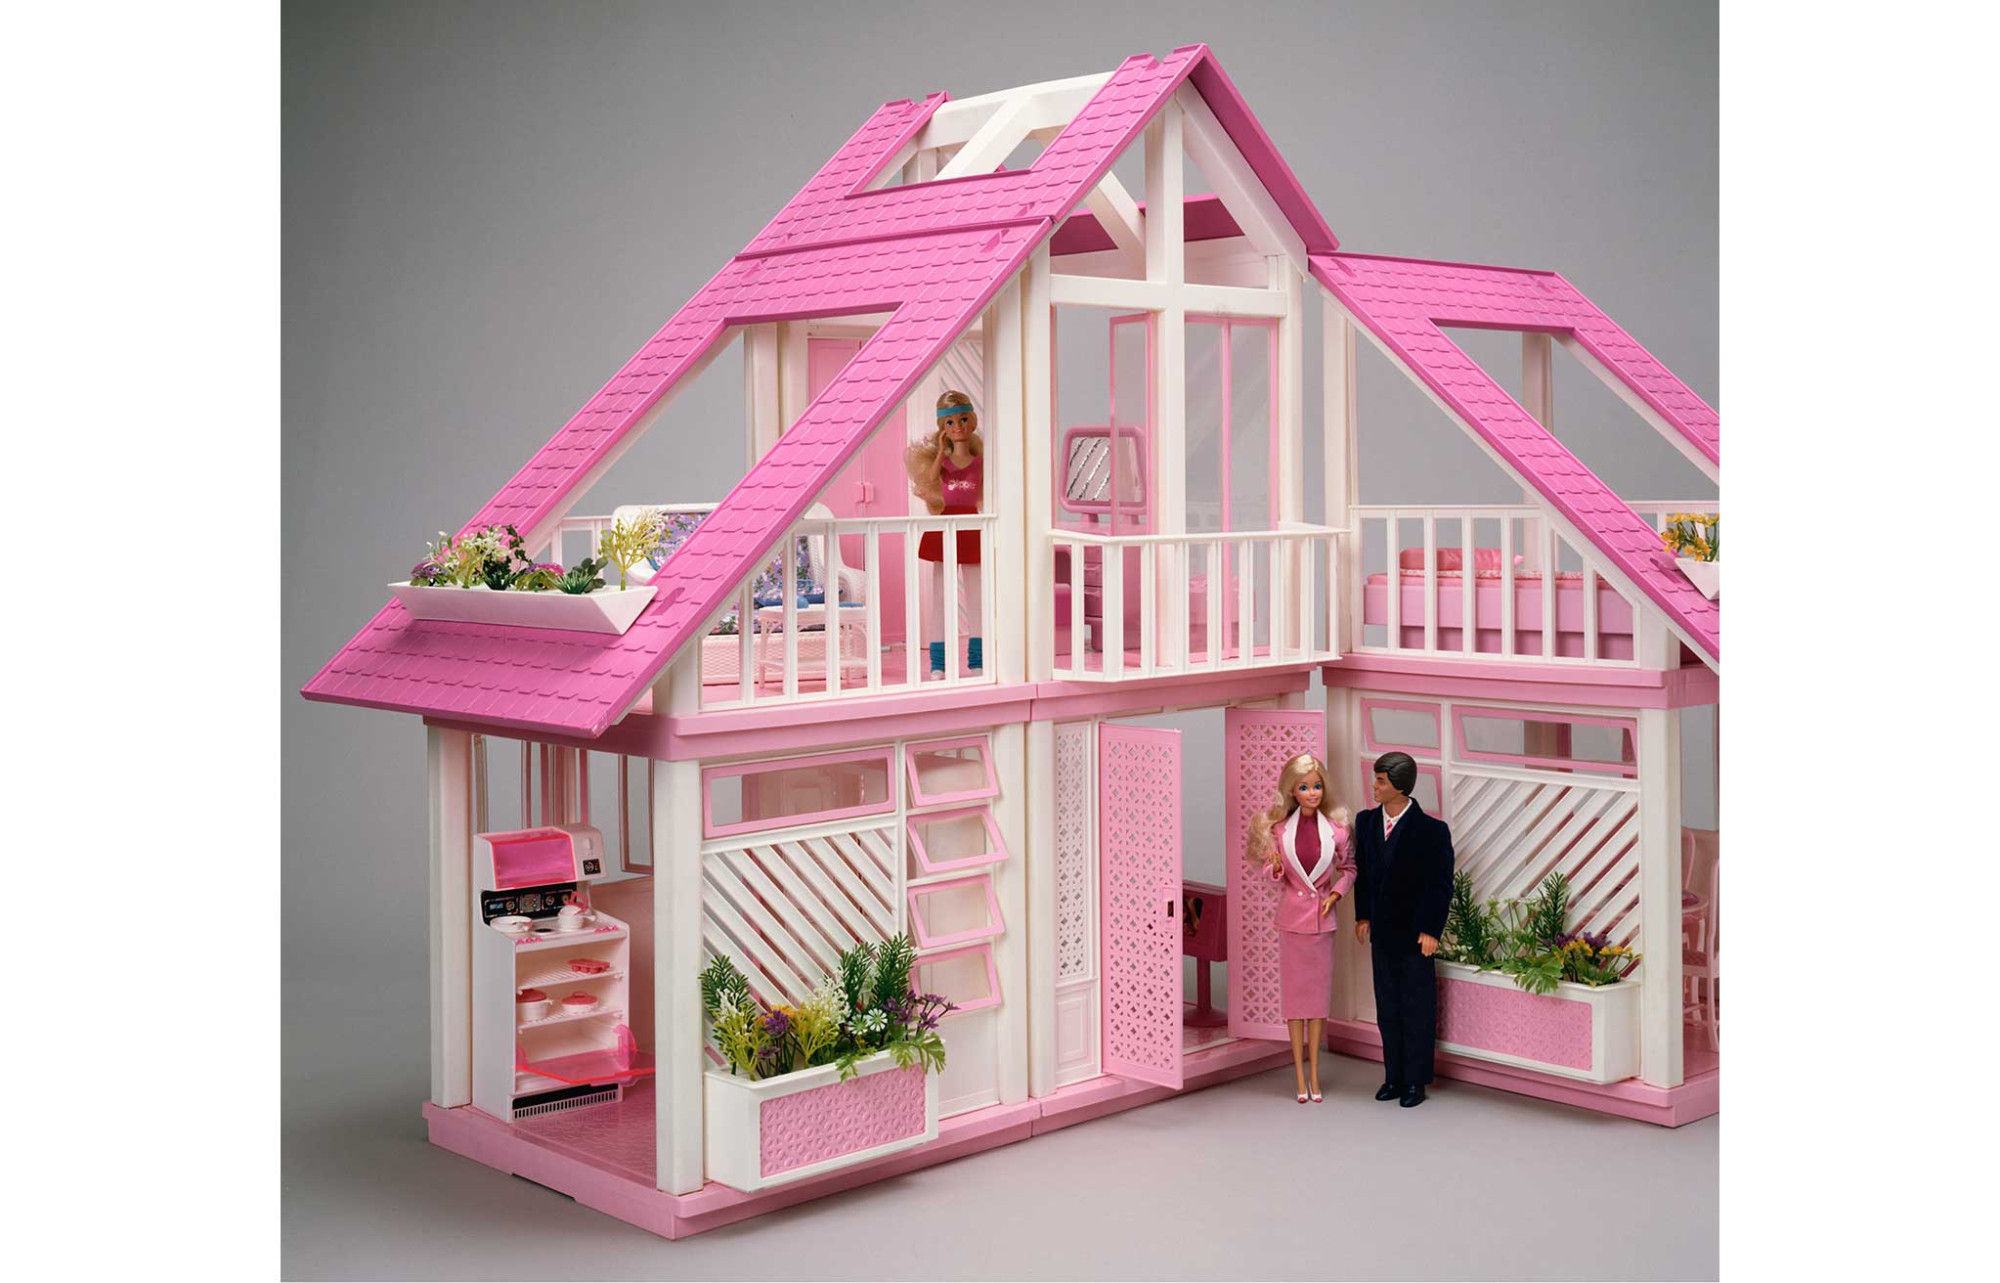 DreamHouse, la maison de Barbie (enfin) disponible sur Airbnb